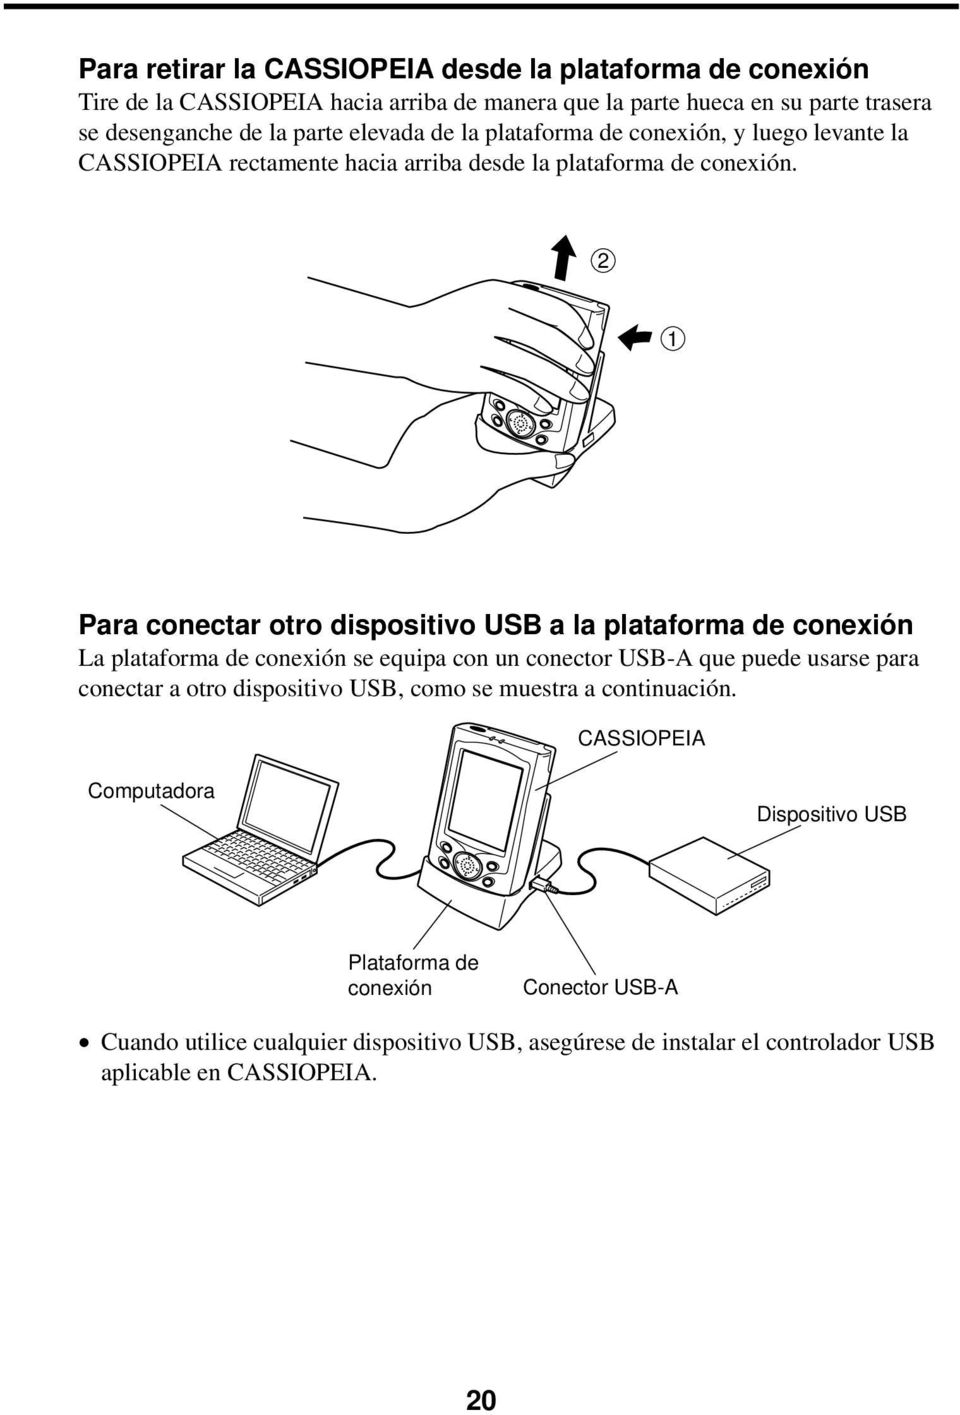 2 1 Para conectar otro dispositivo USB a la plataforma de conexión La plataforma de conexión se equipa con un conector USB-A que puede usarse para conectar a otro